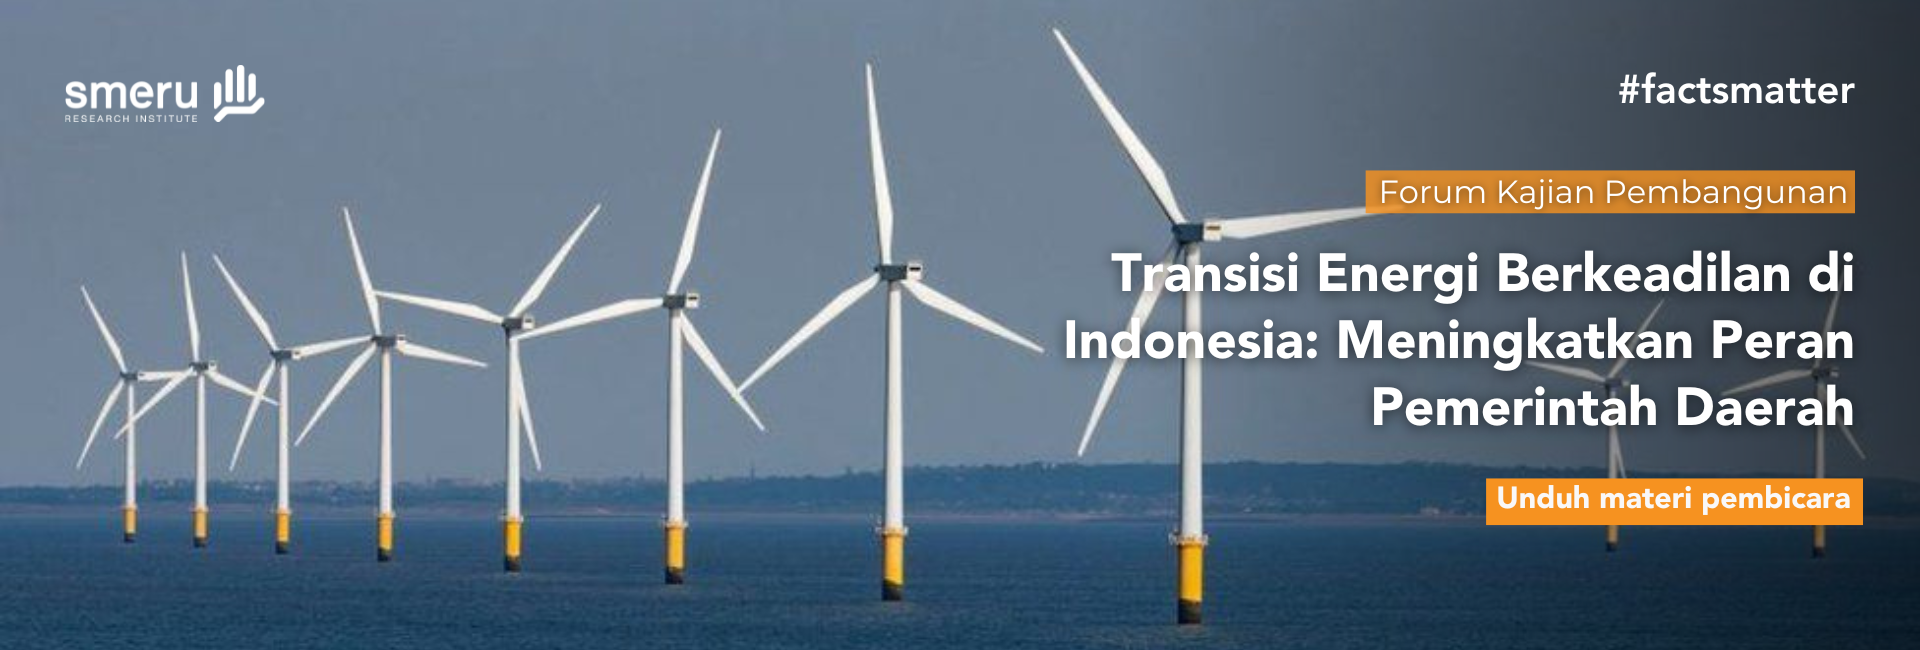 Transisi Energi Berkeadilan di Indonesia: Meningkatkan Peran Pemerintah Daerah